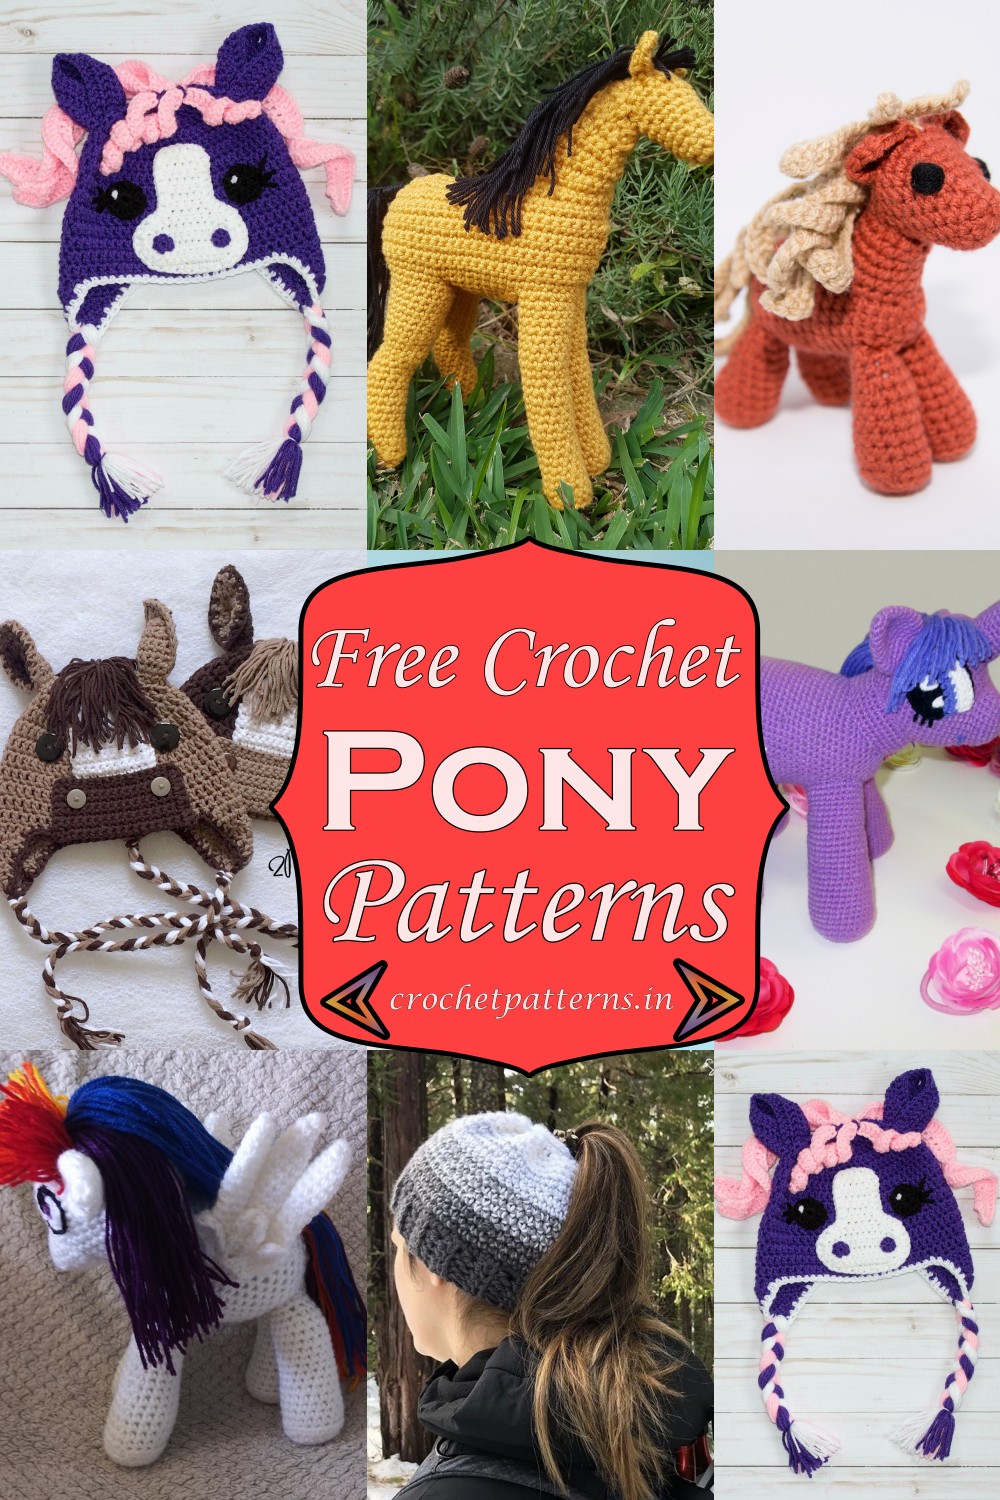 Free Crochet Pony Patterns